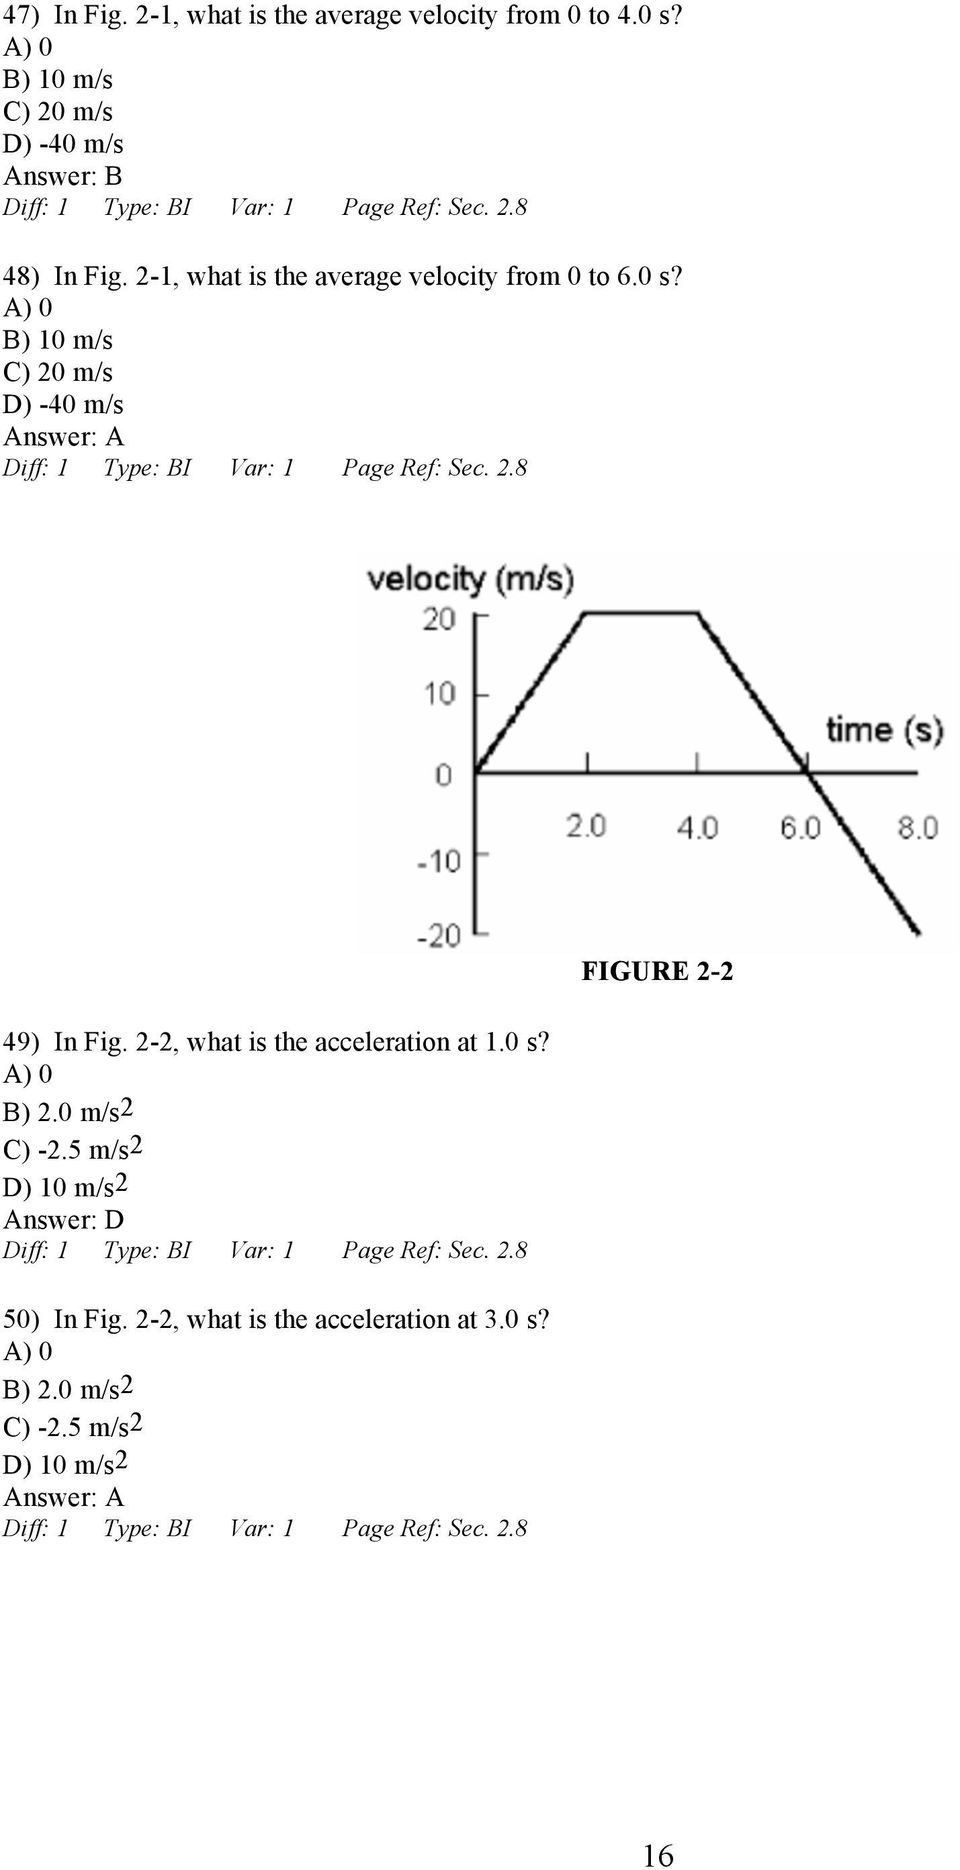 B) 10 m/s C) 20 m/s D) -40 m/s 49) In Fig. 2-2, what is the acceleration at 1.0 s? B) 2.